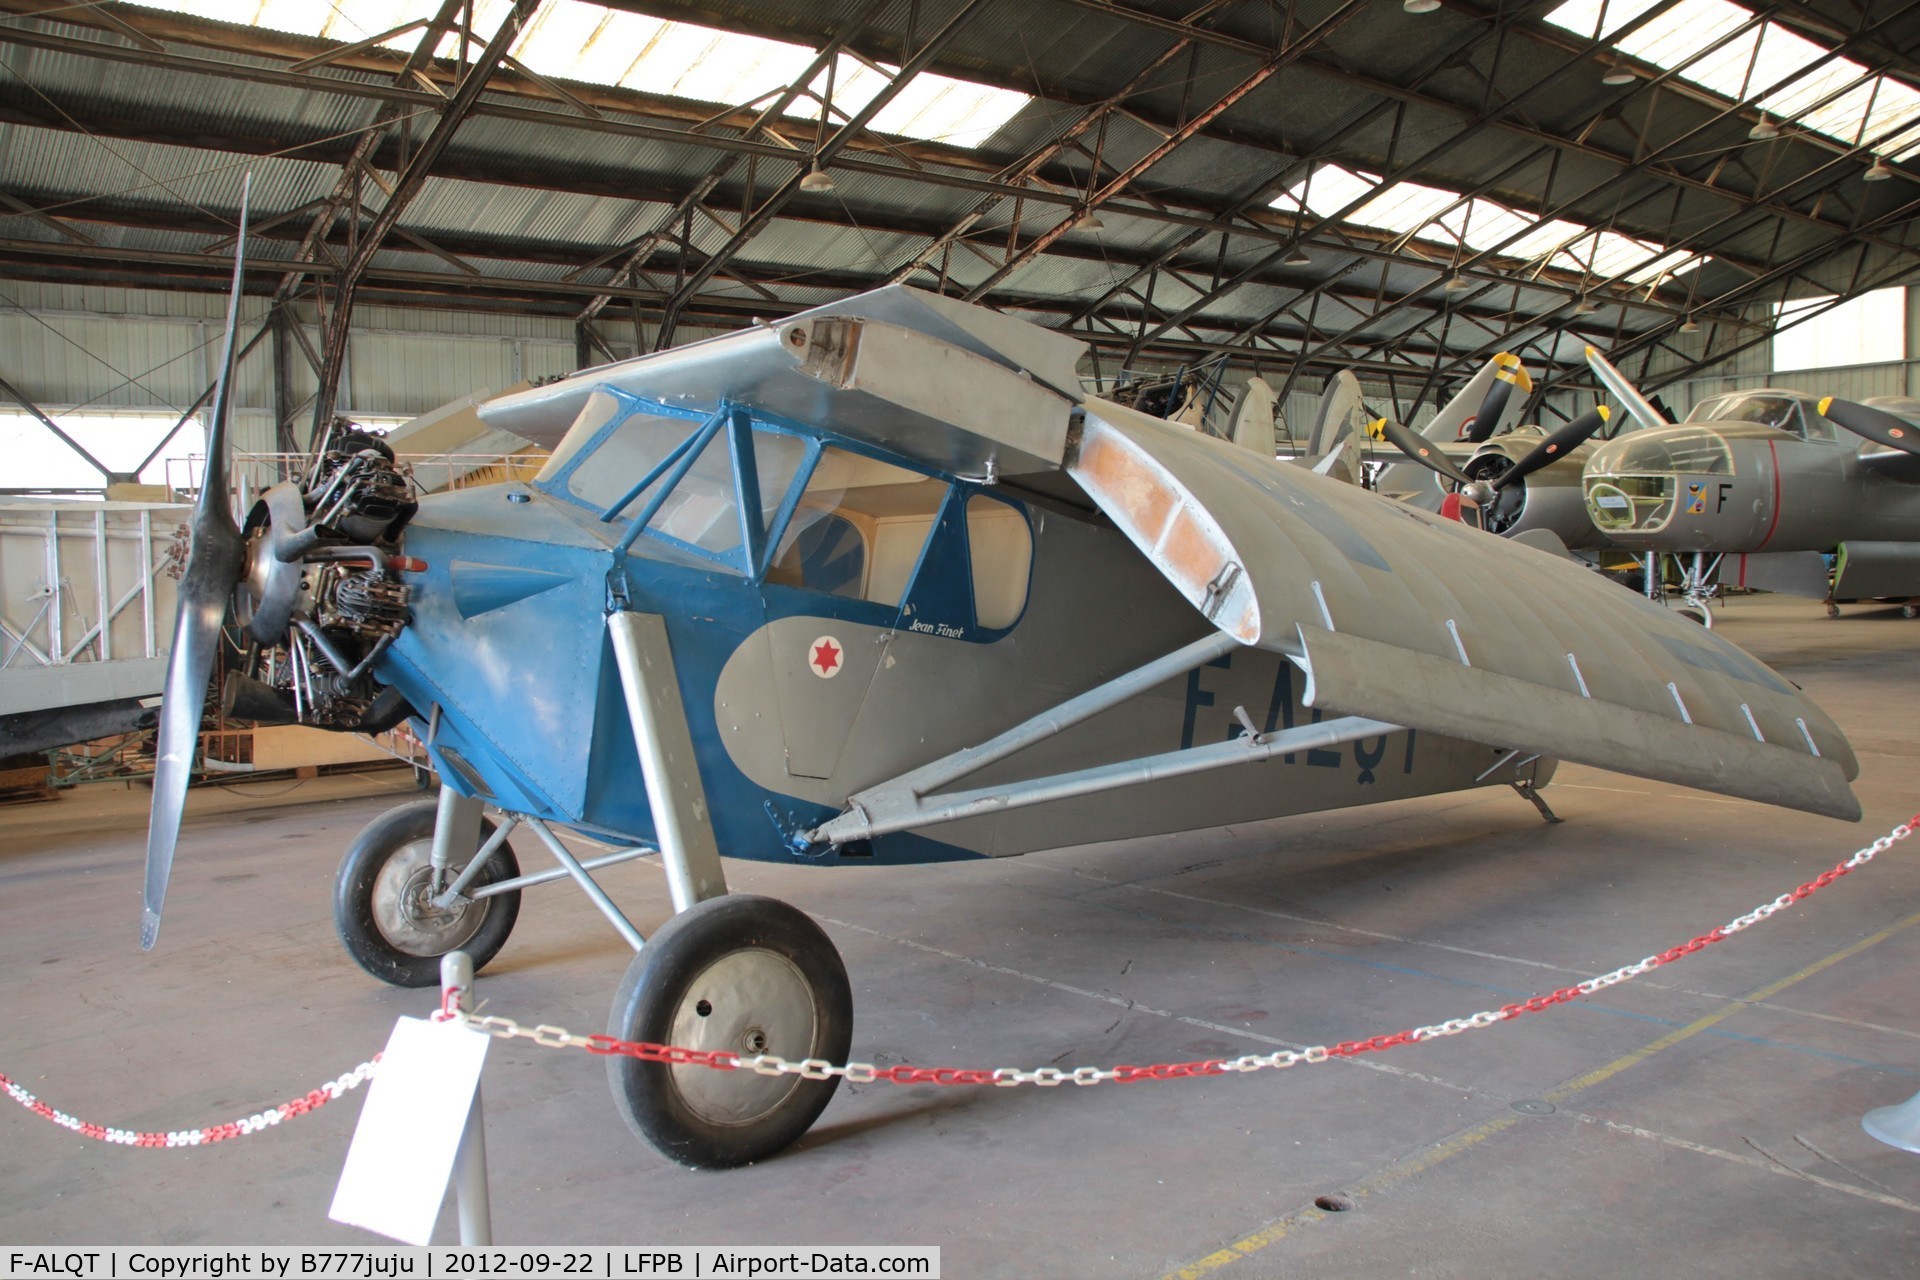 F-ALQT, 1931 Potez 36/13 C/N 2620, preserved at Musée de l'air